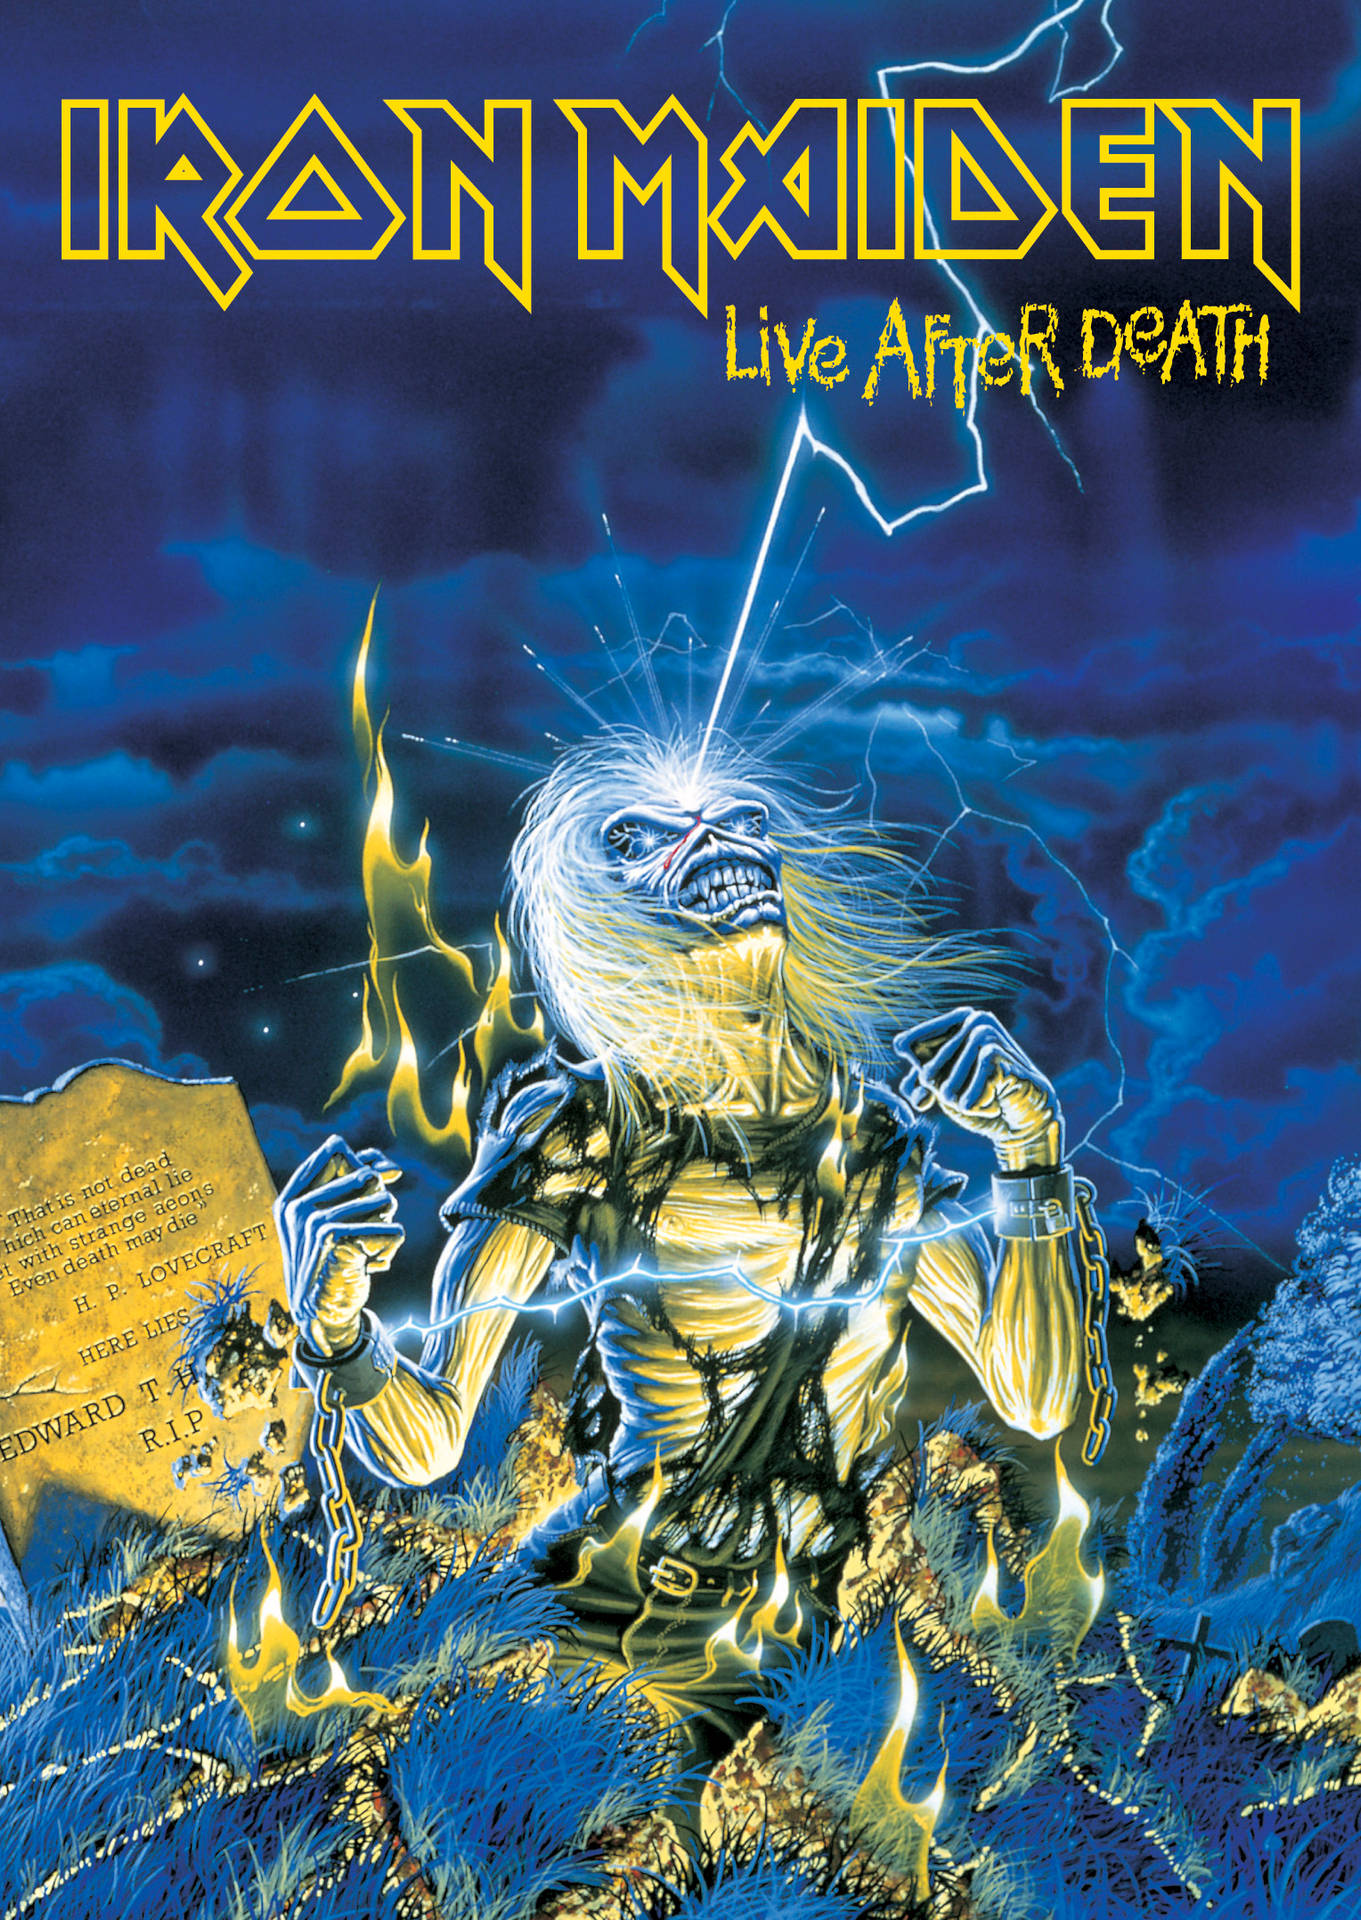 Ironmaiden Live After Death - Iron Maiden Live Efter Döden. Wallpaper